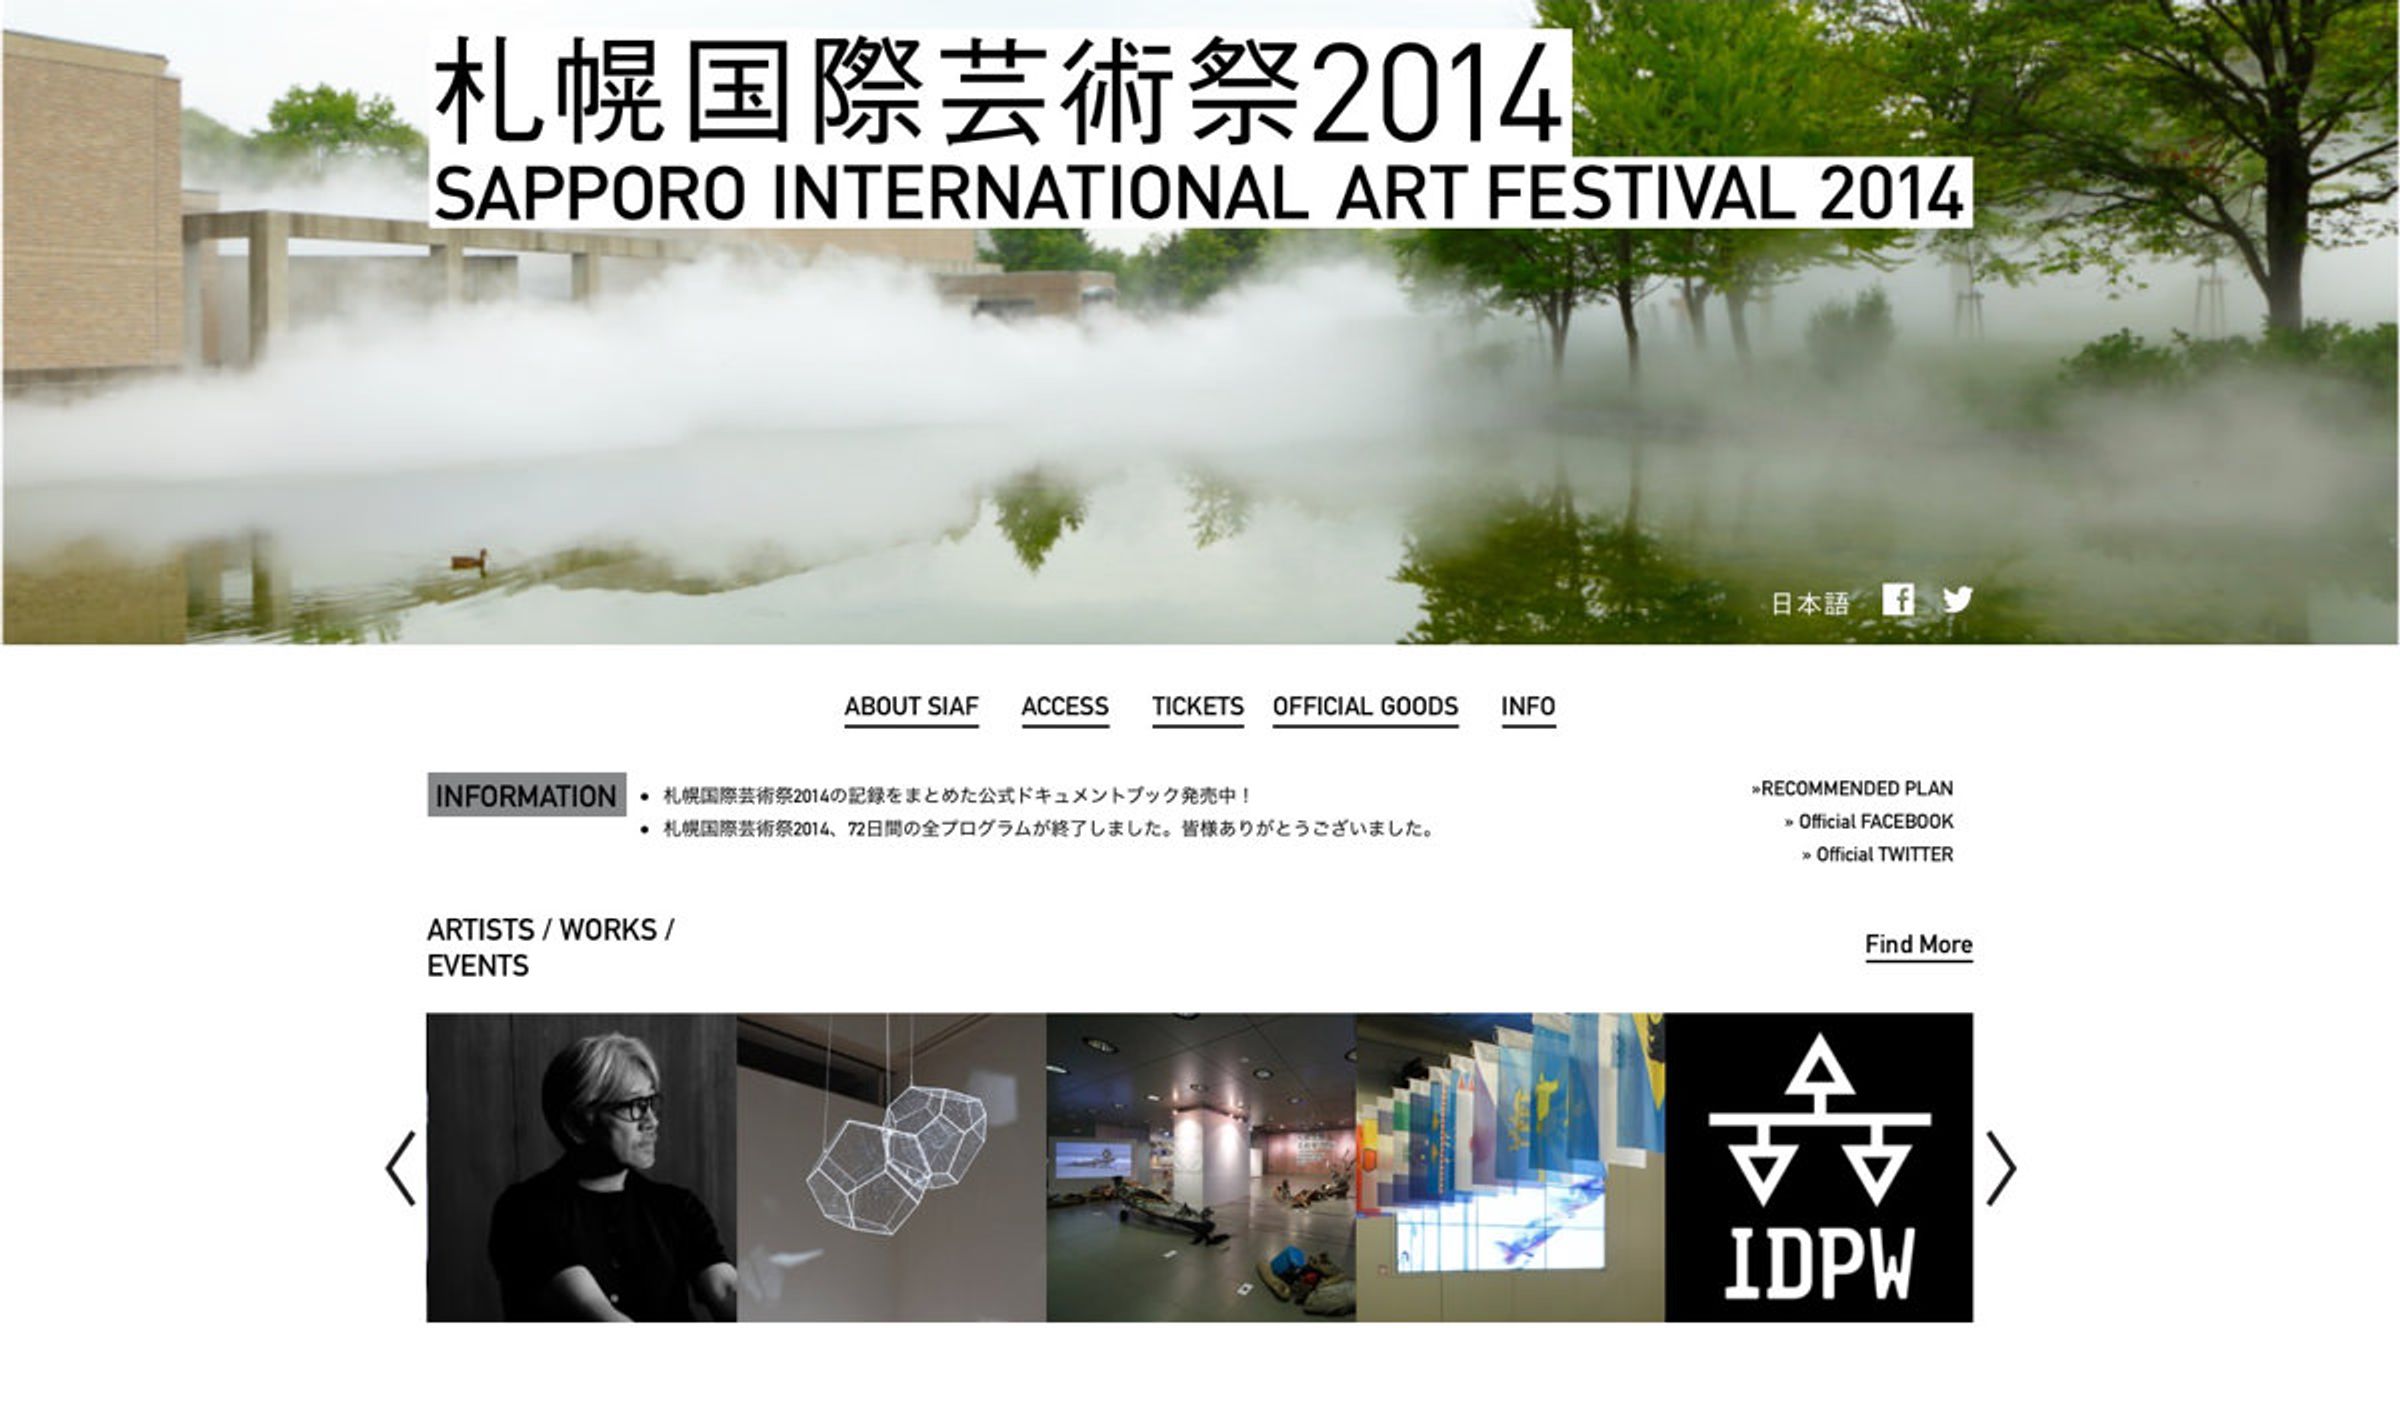 Sapporo International Art Festival